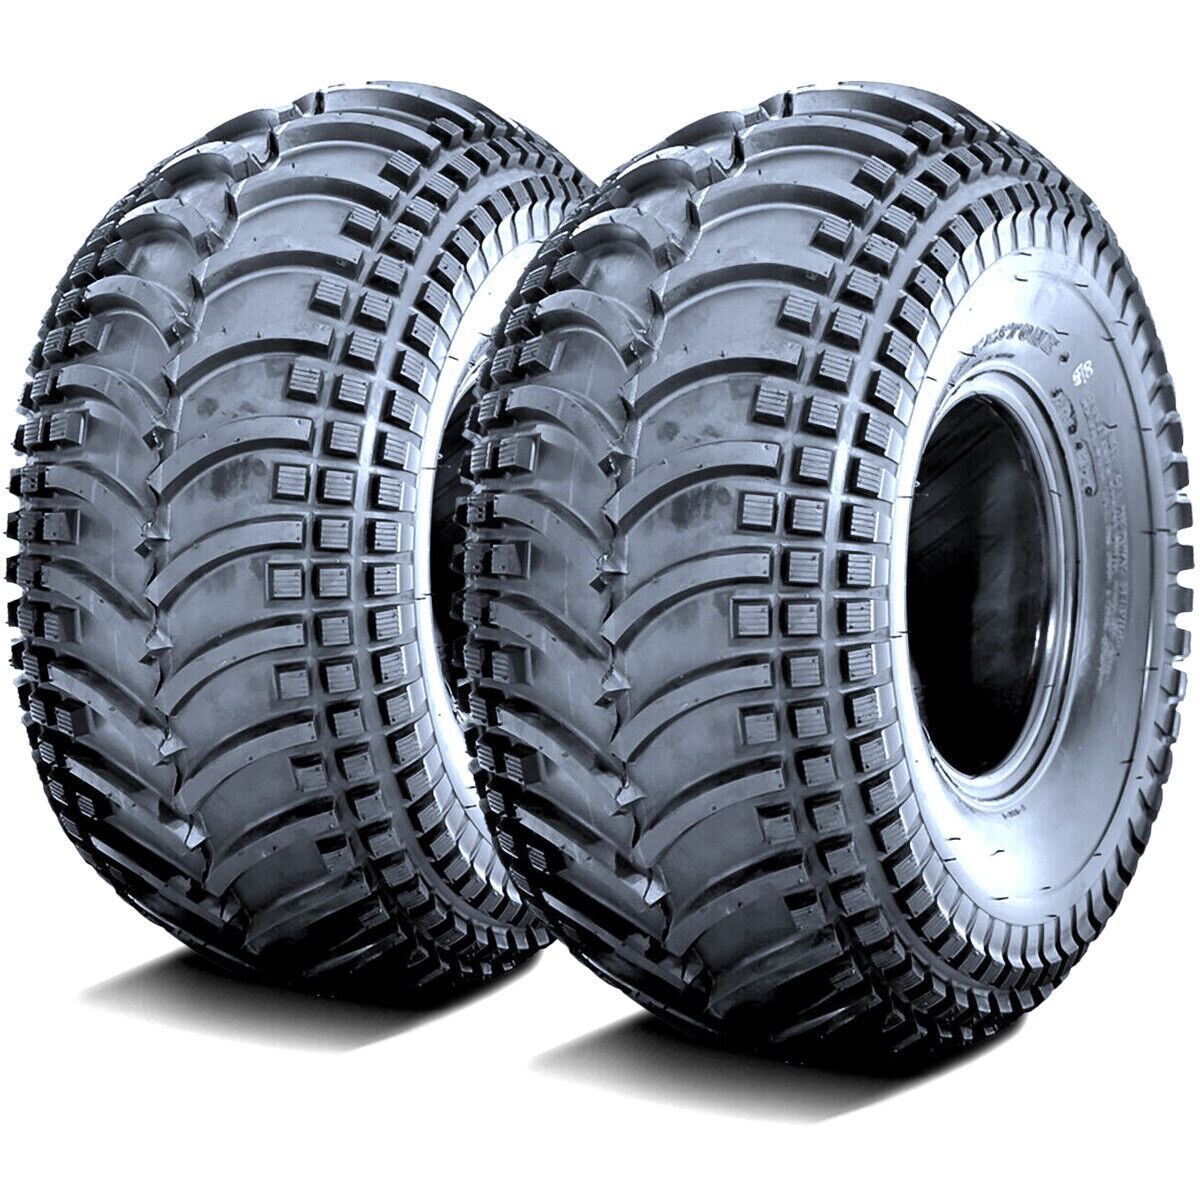 2 Tires Deestone D930 23x8.00-11 23x8-11 23x8x11 33F 4 Ply MT M/T Mud ATV UTV